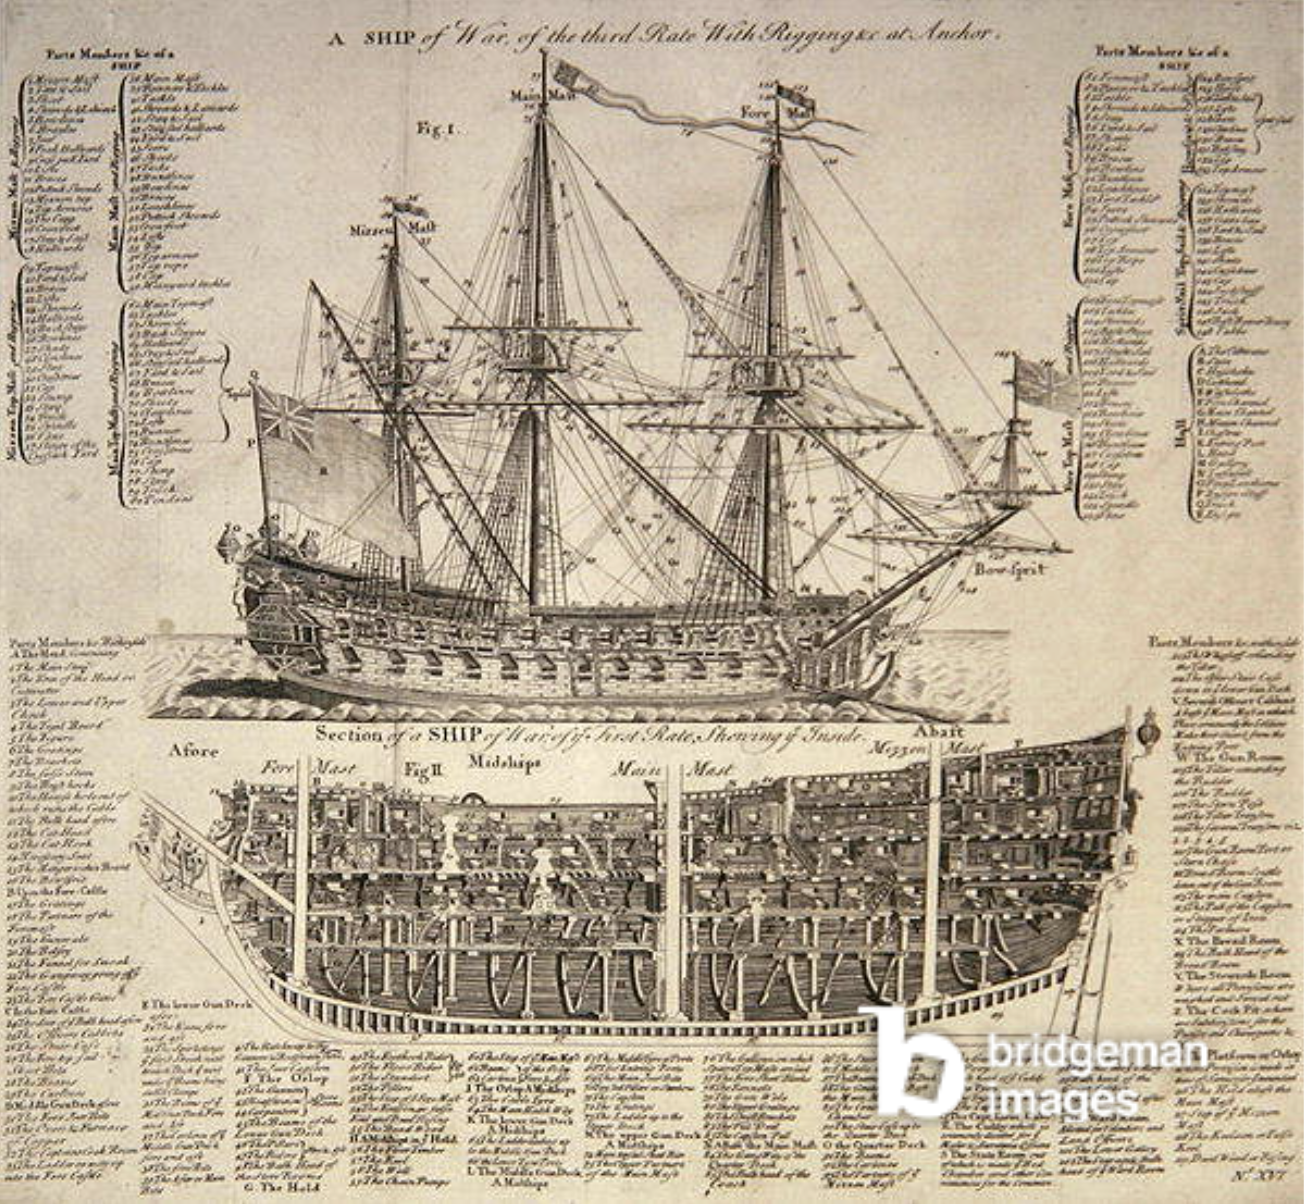 Illustration / National Museum of the Royal Navy, Portsmouth, Hampshire, UK / Bridgeman Images